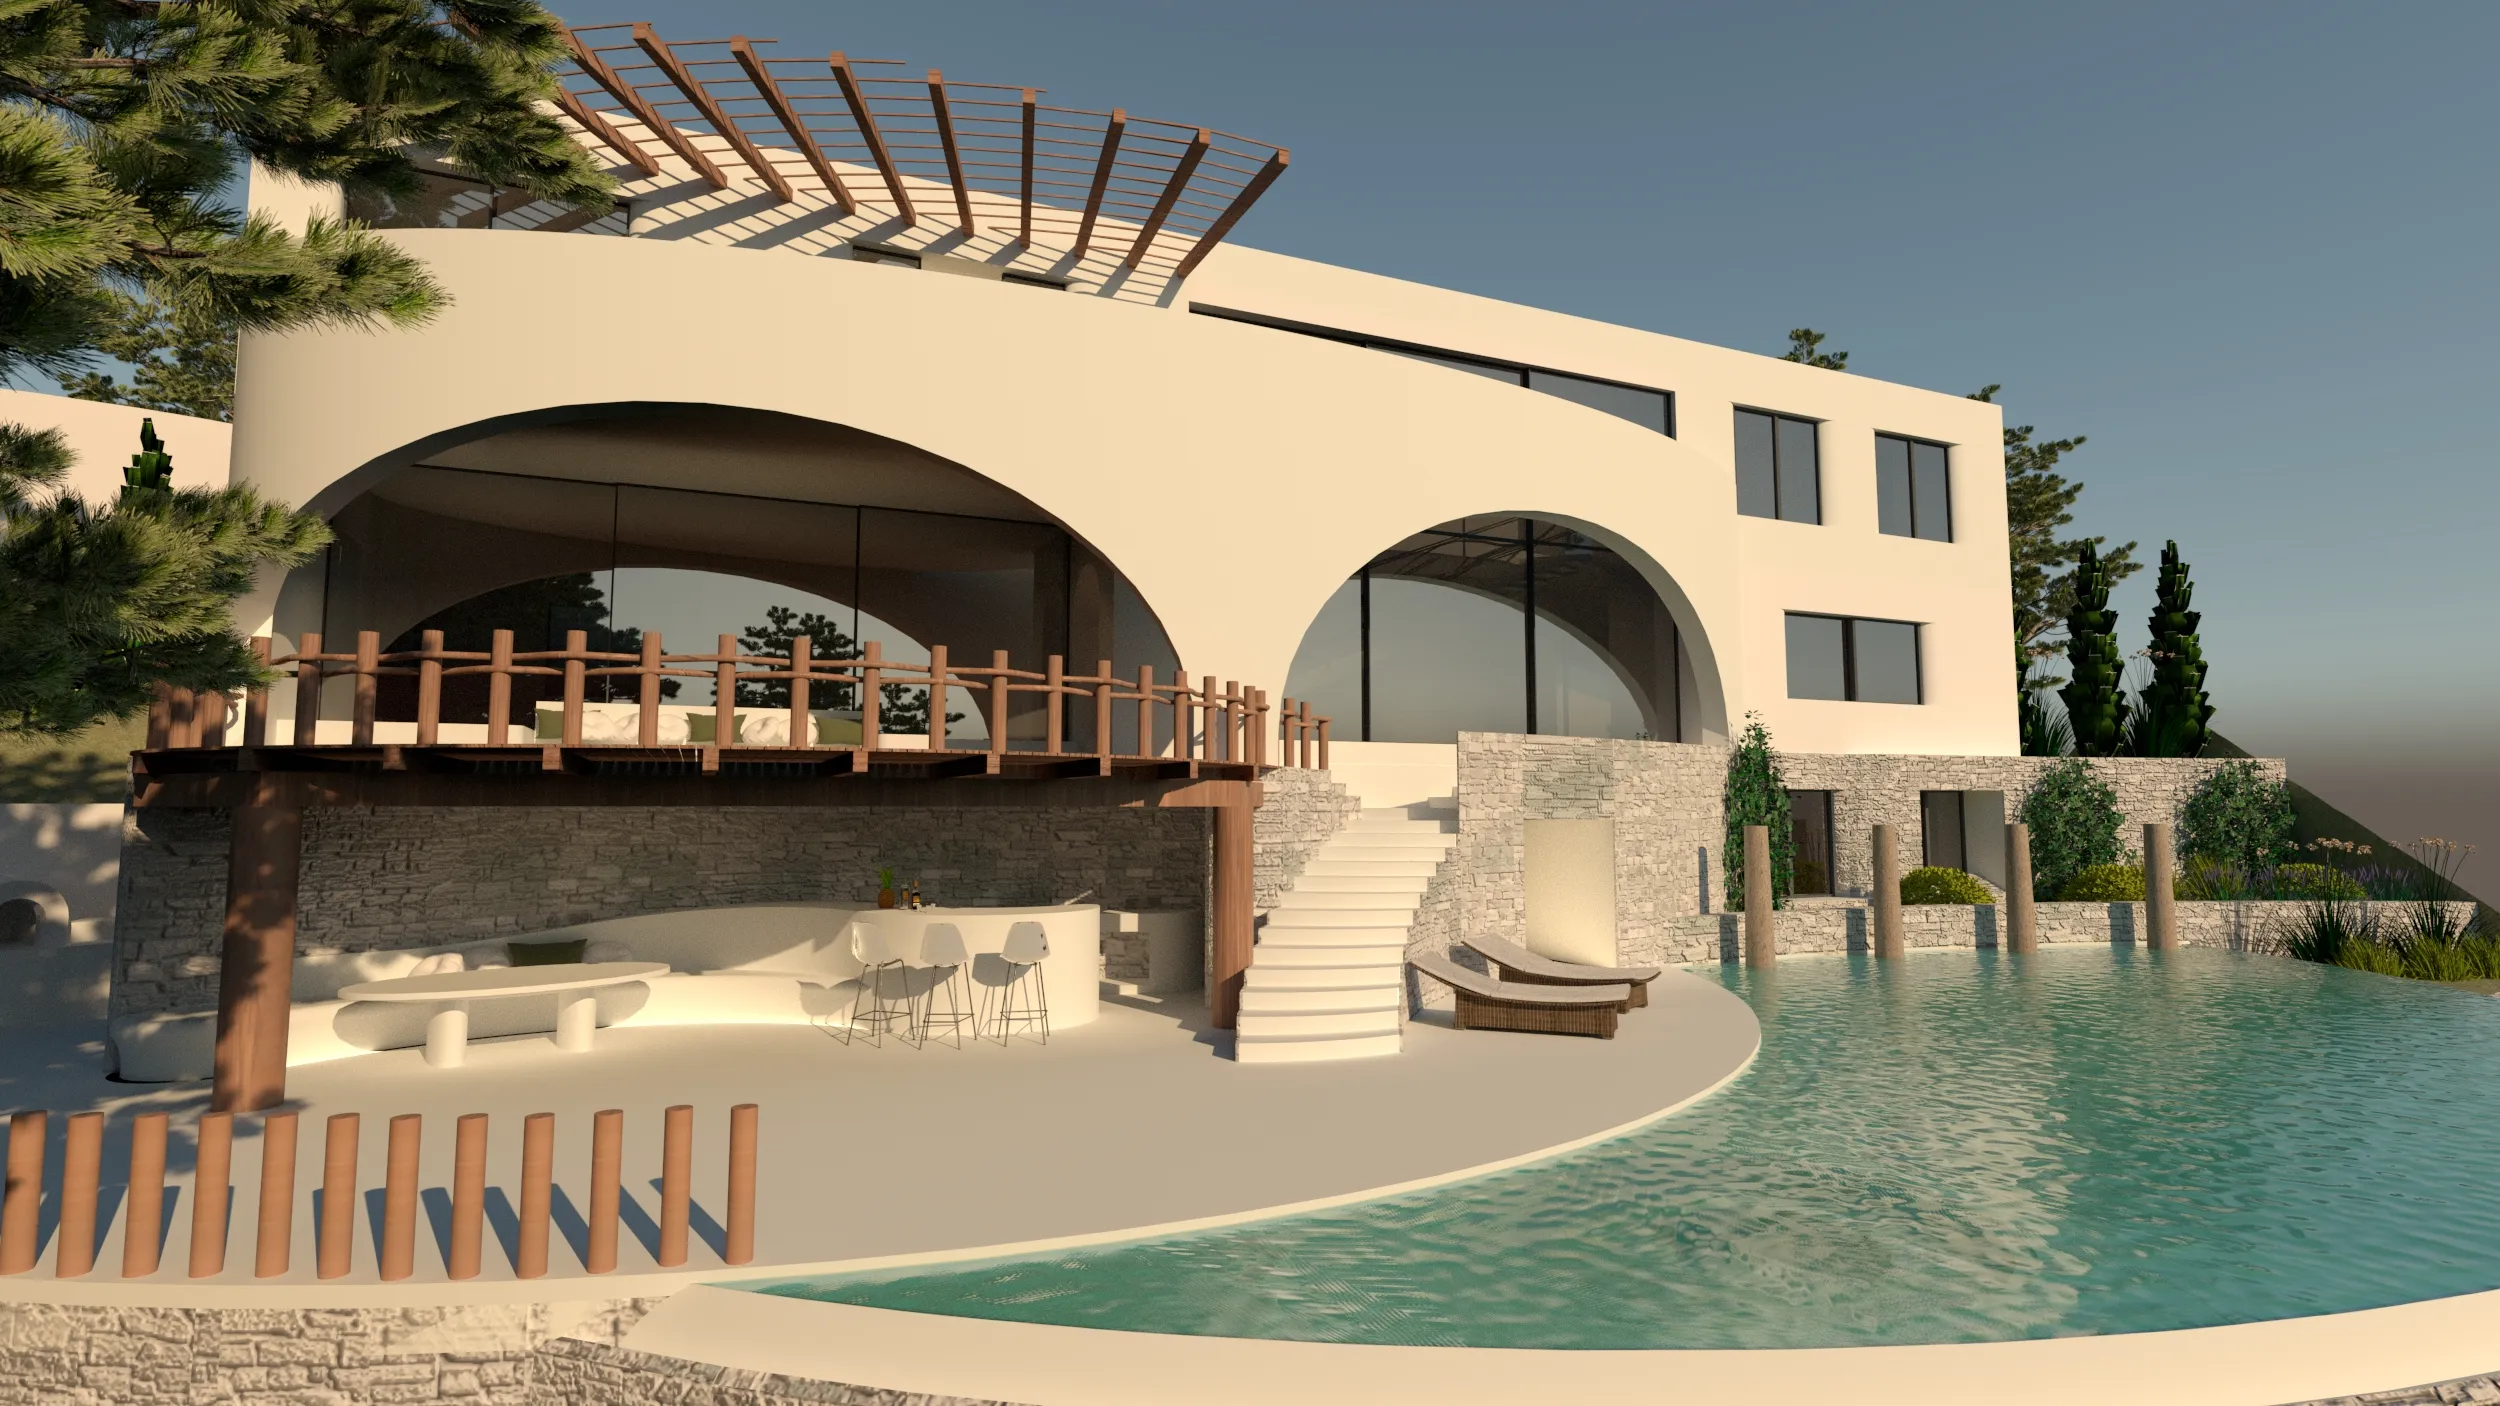 Casa Catara pool